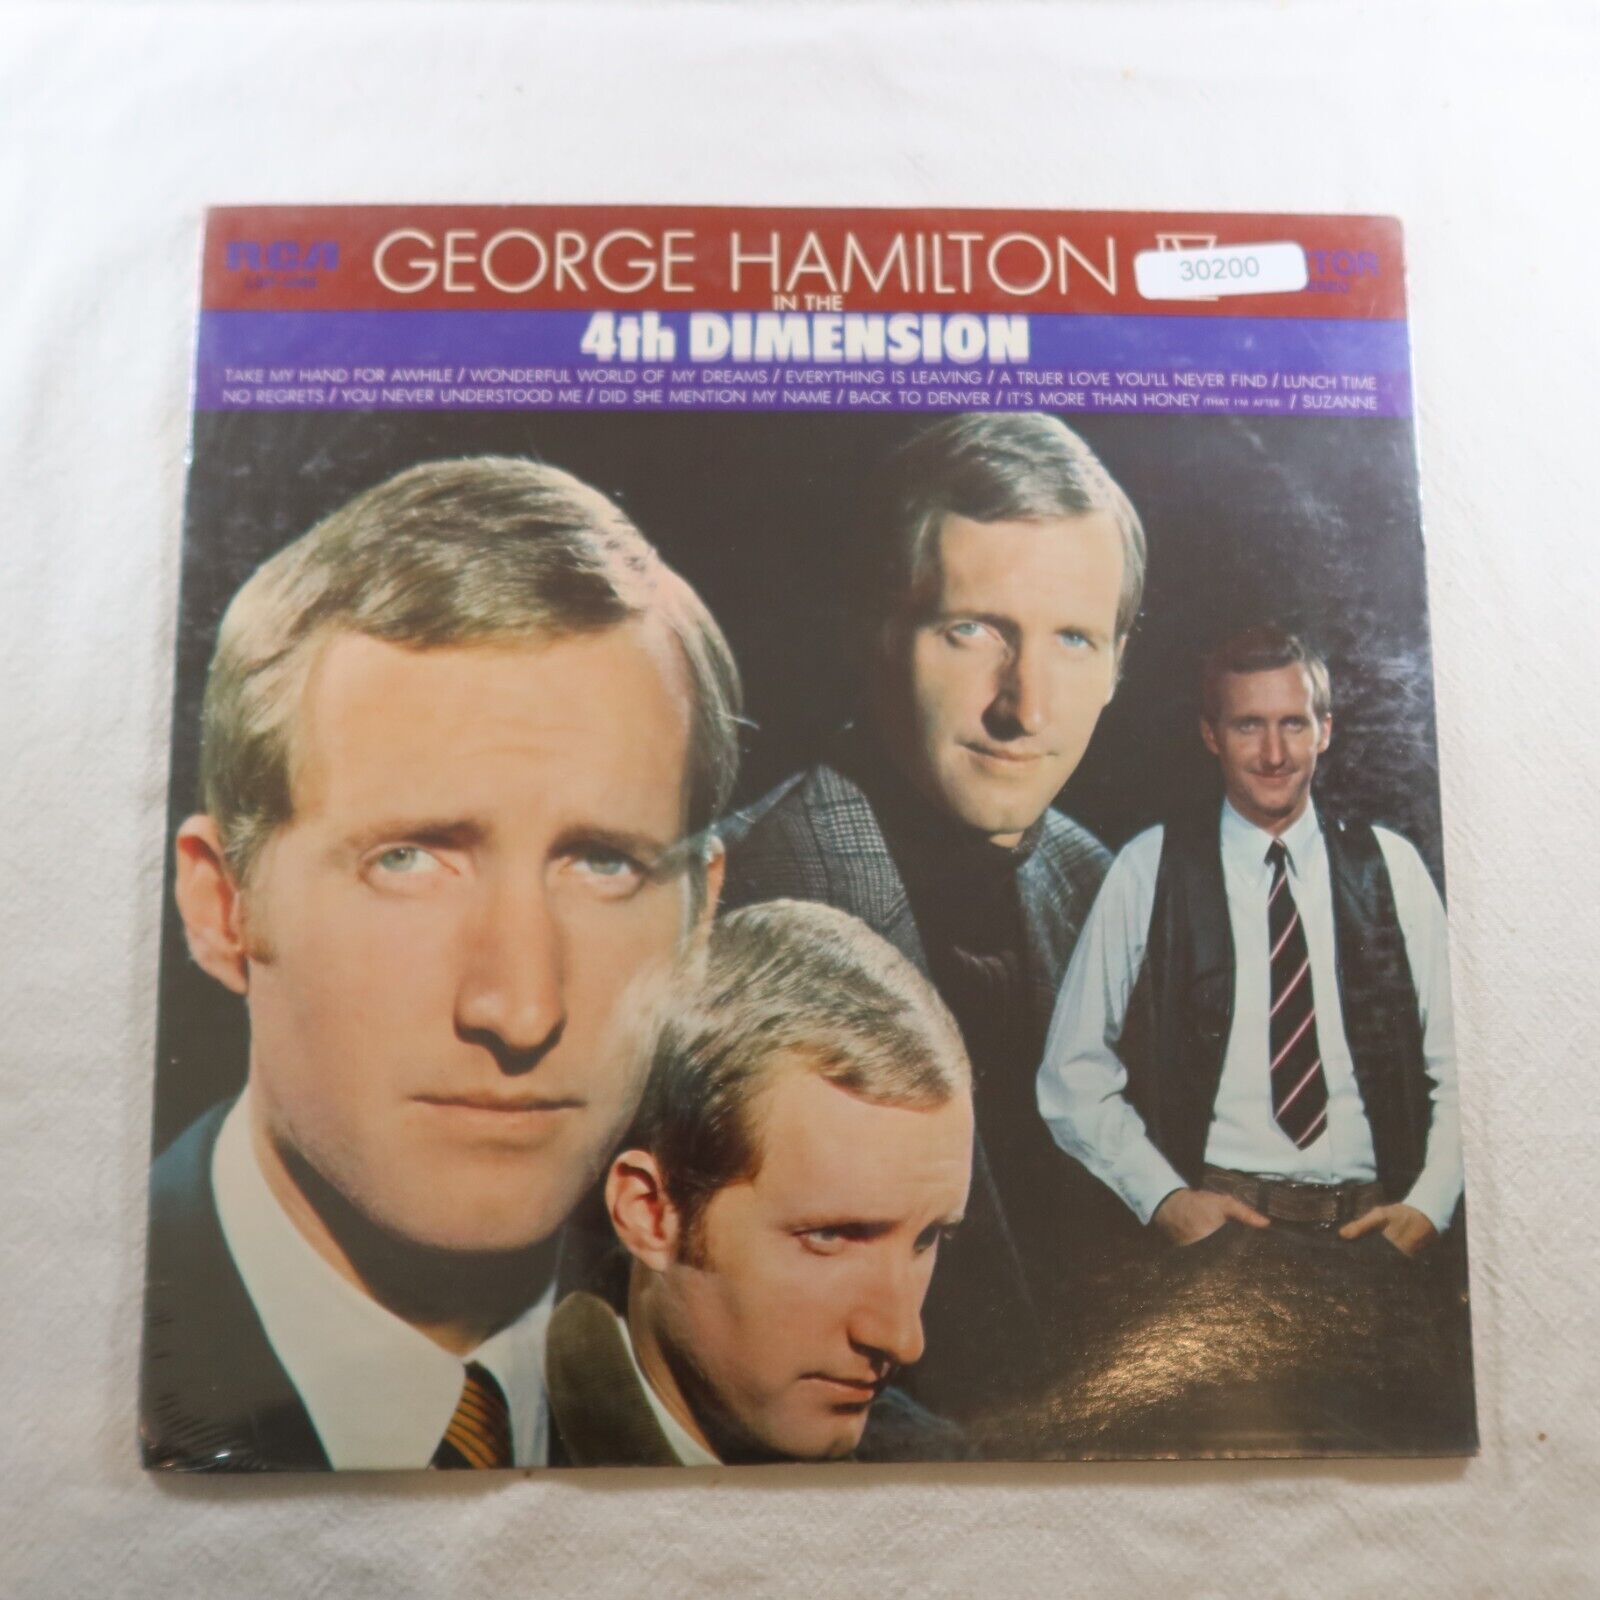 NEW George Hamilton In The 4Th Dimension LP Vinyl Record Album